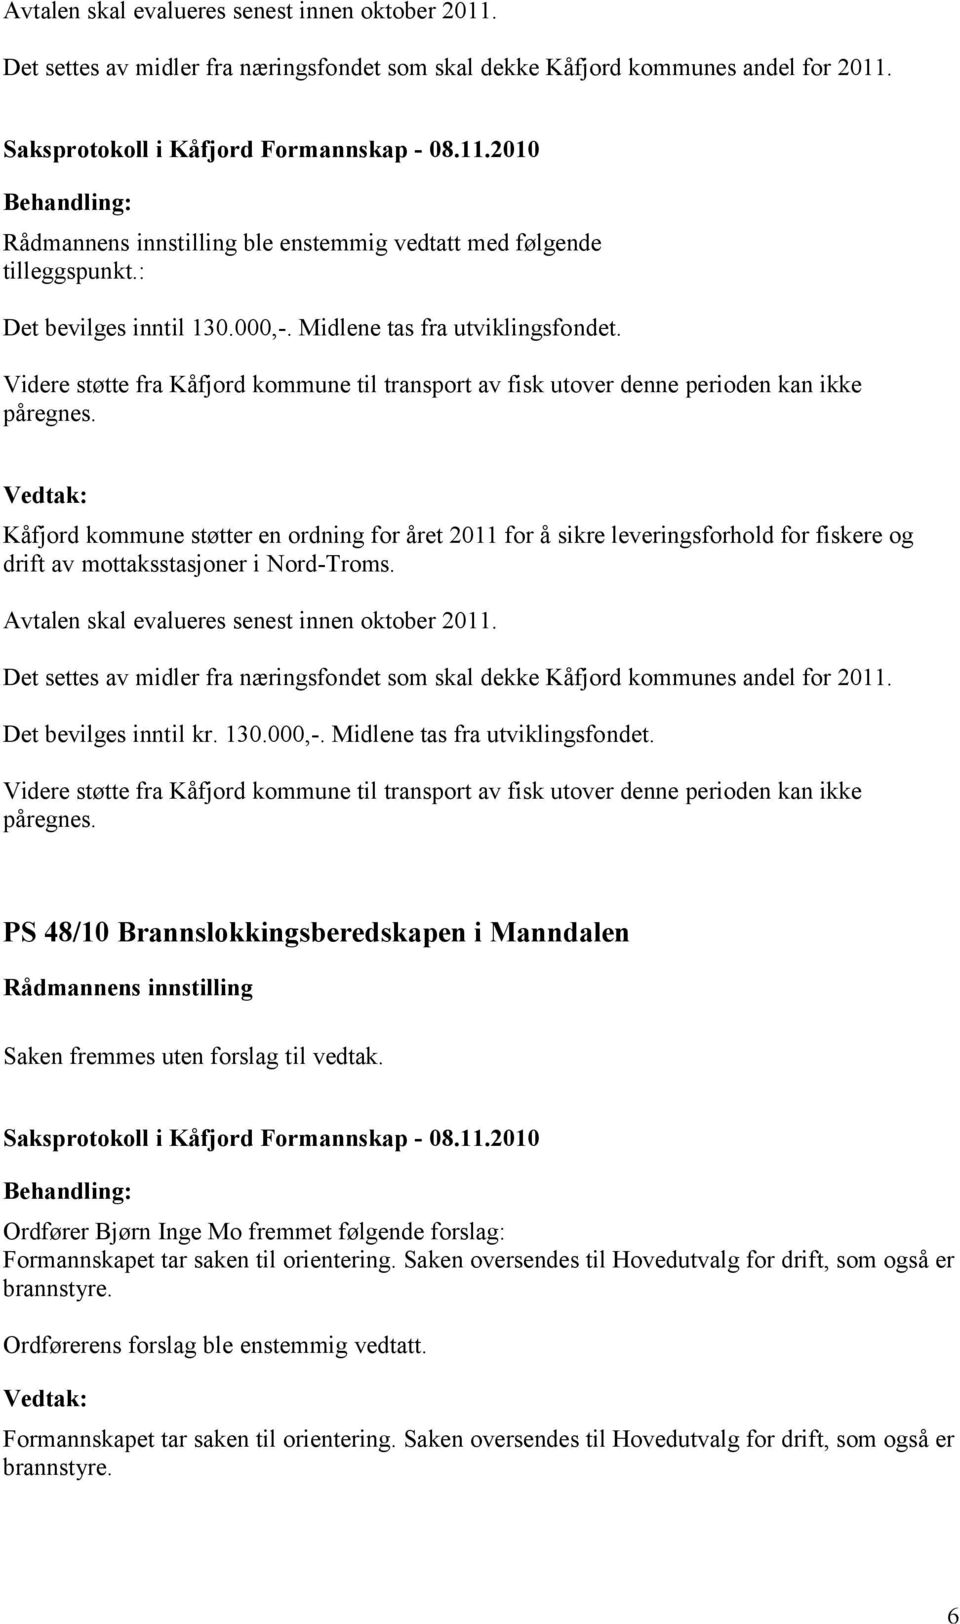 Kåfjord kommune støtter en ordning for året 2011 for å sikre leveringsforhold for fiskere og drift av mottaksstasjoner i Nord-Troms. Avtalen skal evalueres senest innen oktober 2011.